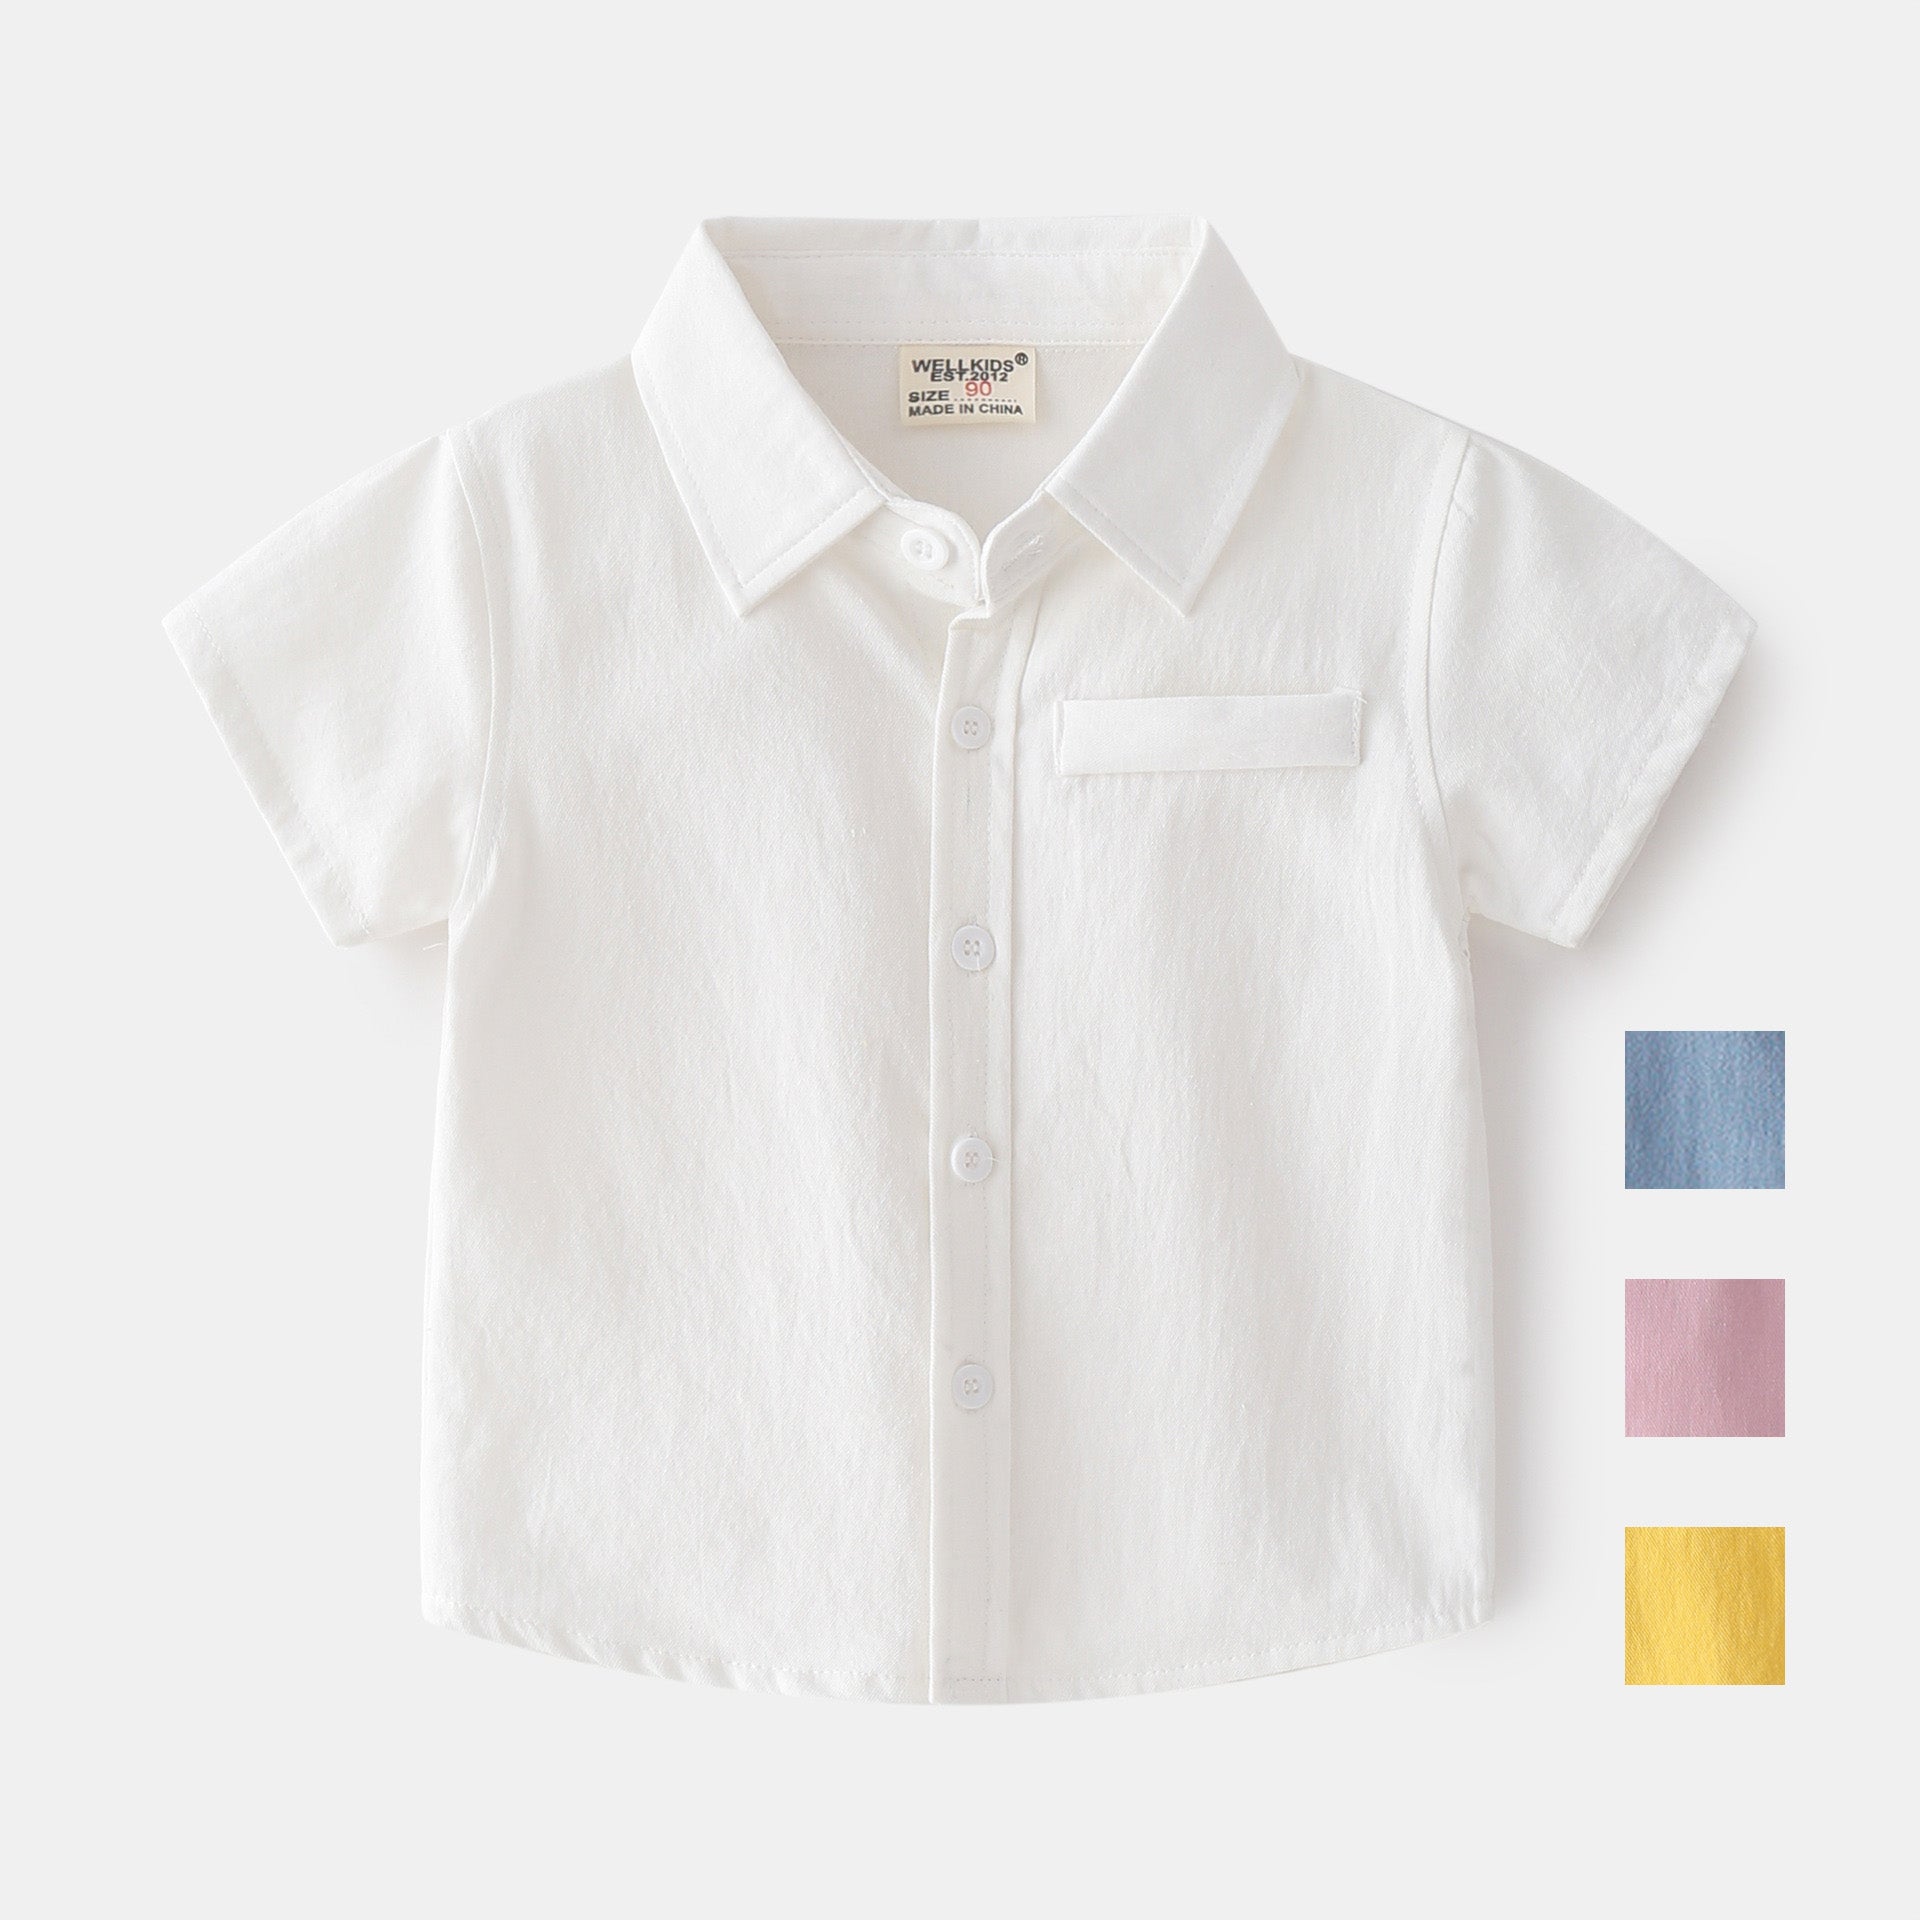 [513119] - Atasan Kemeja Fashion Anak Import - Motif Plain Color